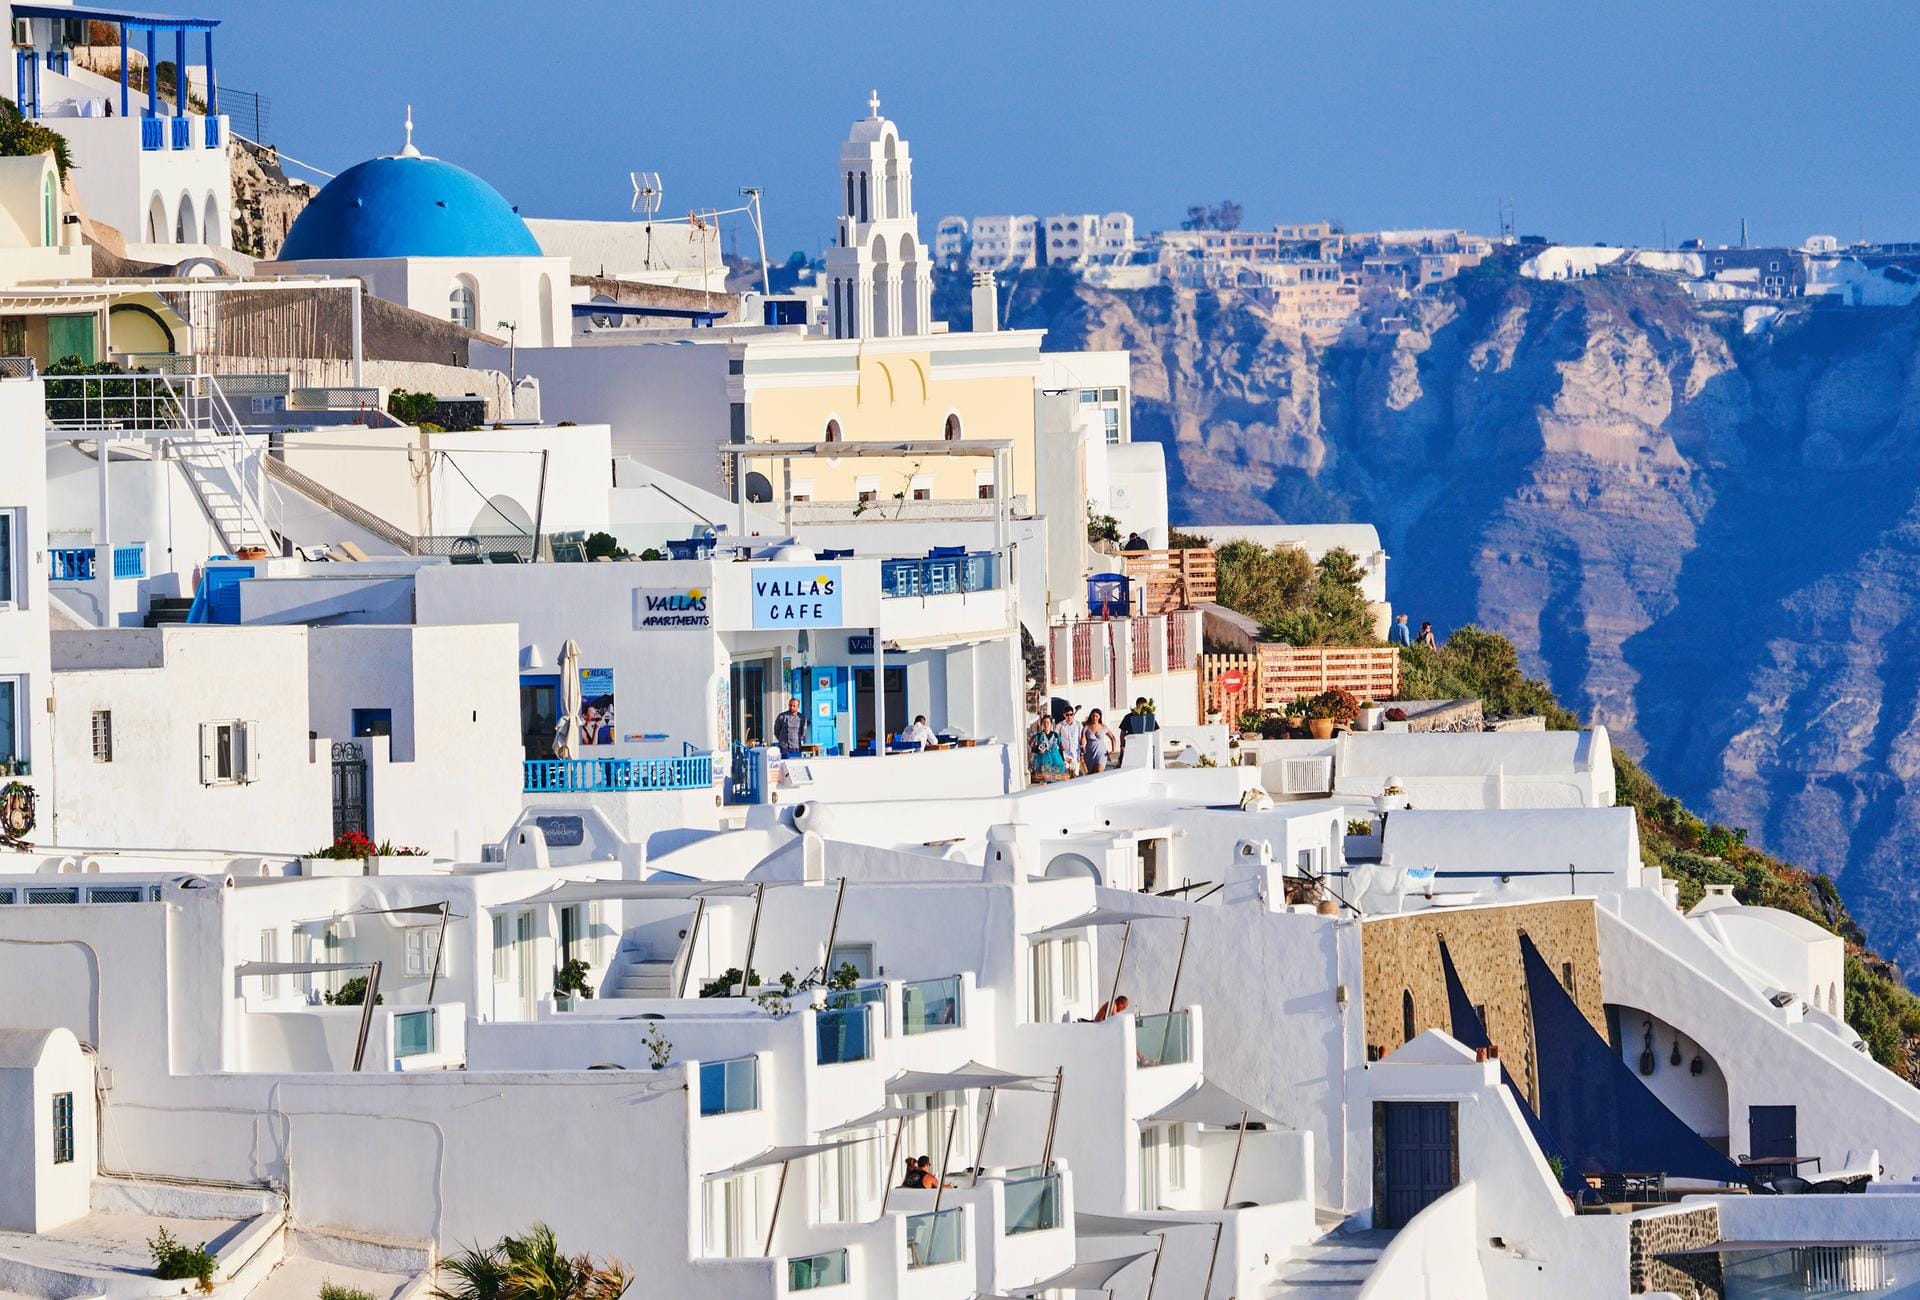 Weiße Häuser auf Santorini: Helle Farben erhöhen die Rückstrahlung, die sogenannte Albedo. So soll es kühler in den Städten sein.